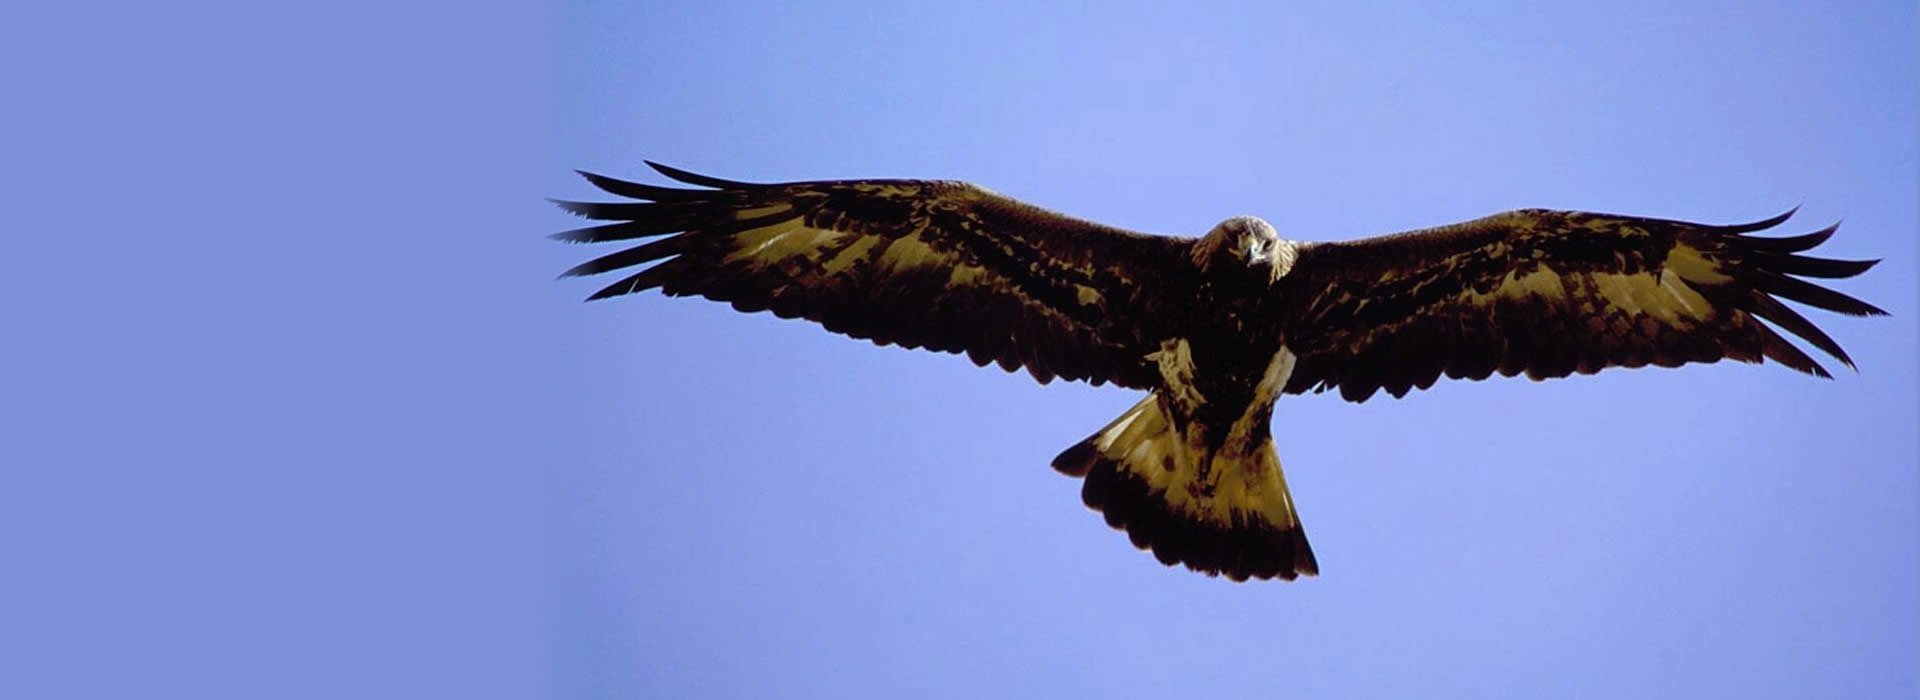 Golden eagle soaring